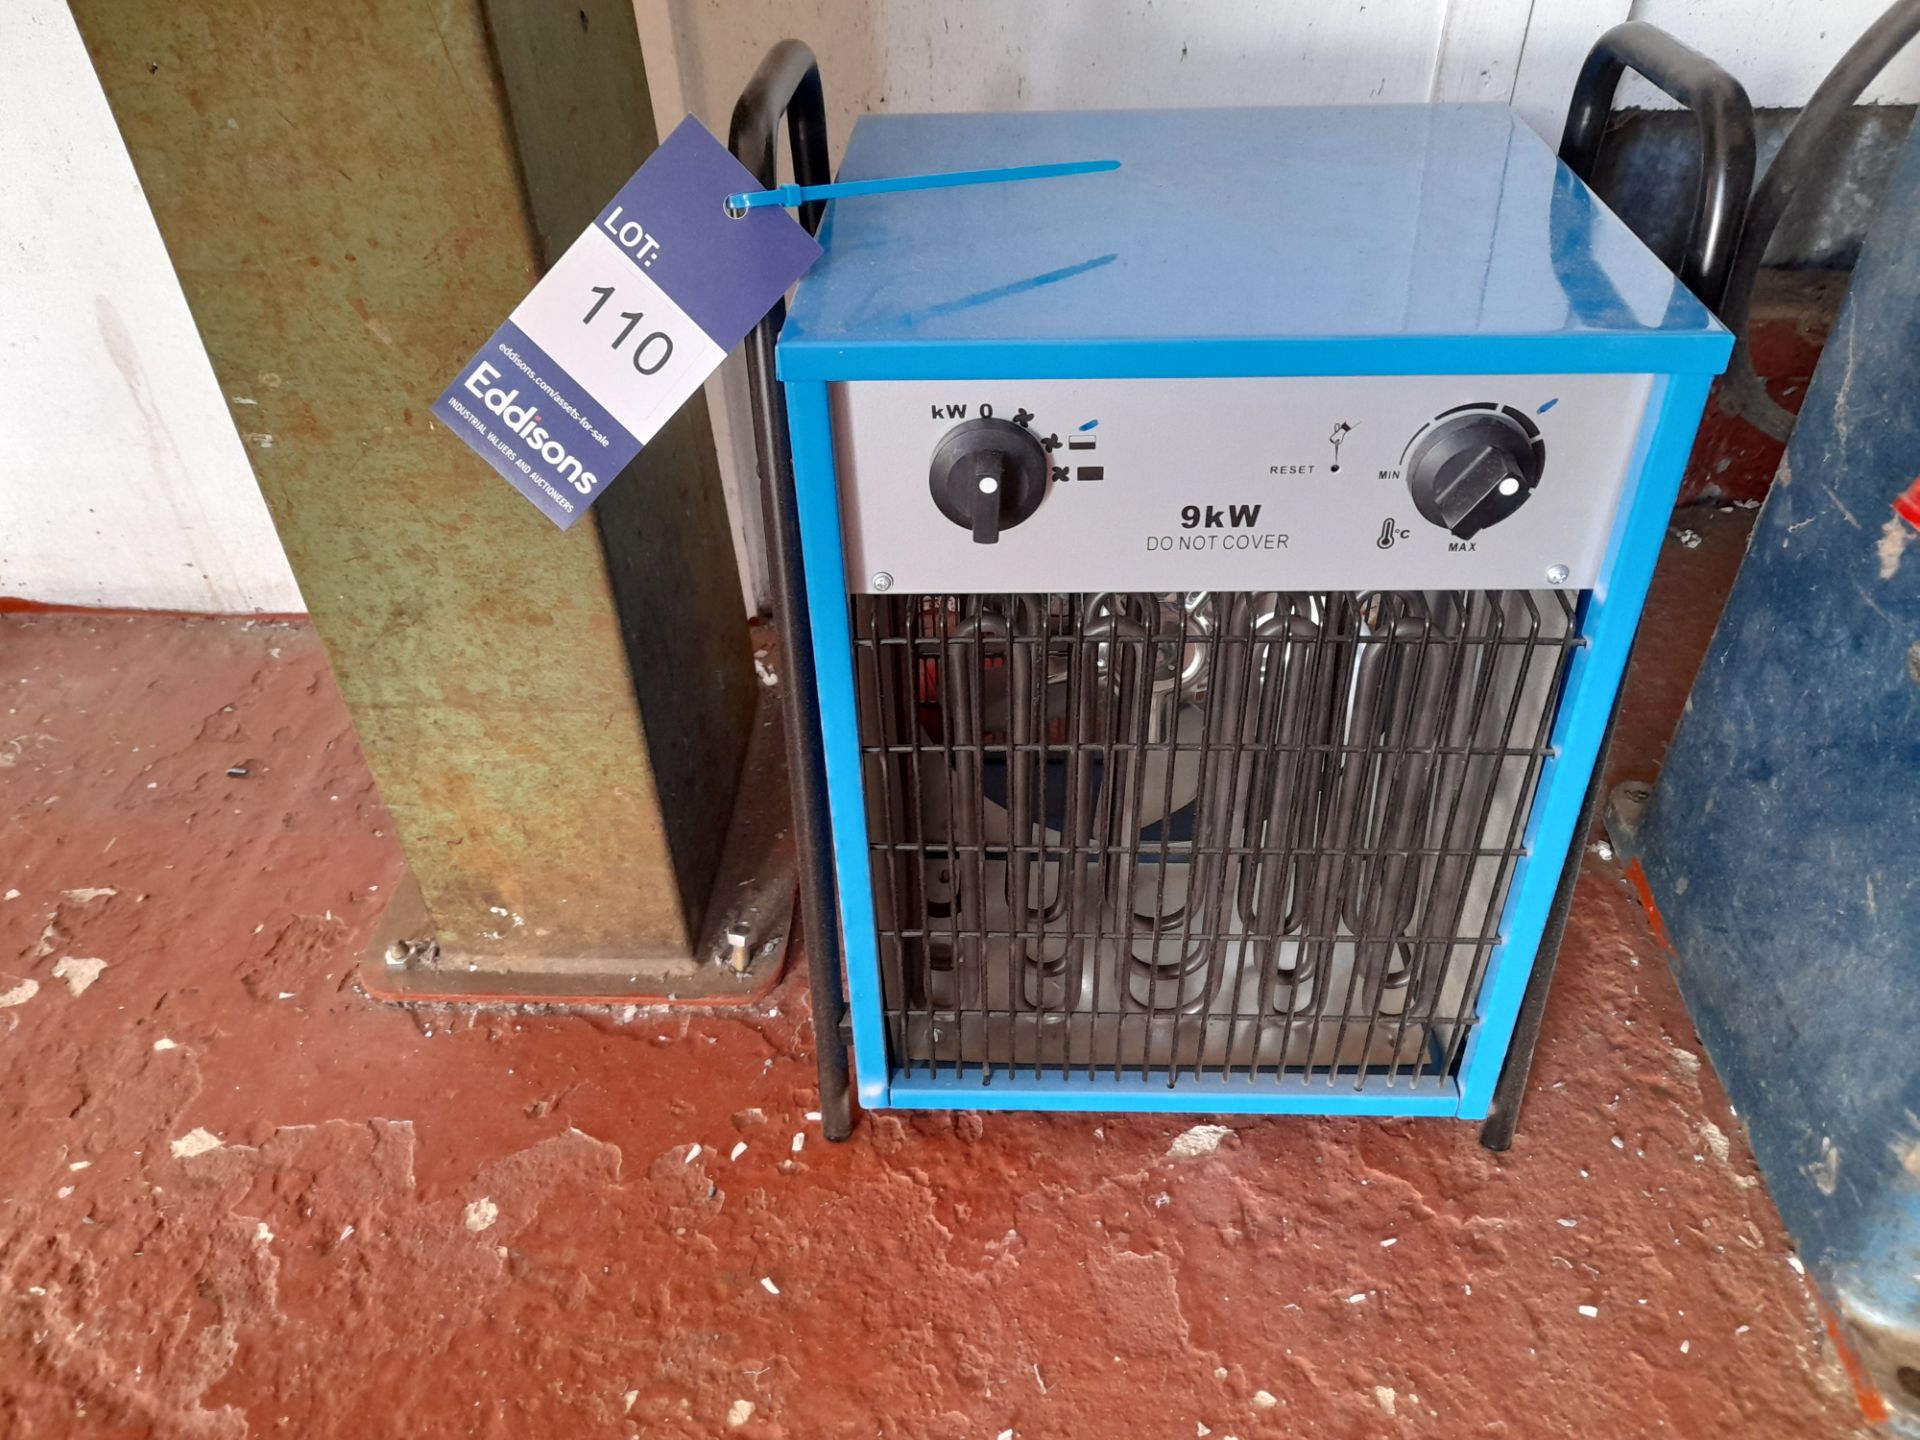 IFH 03 9KW 240V fan heater